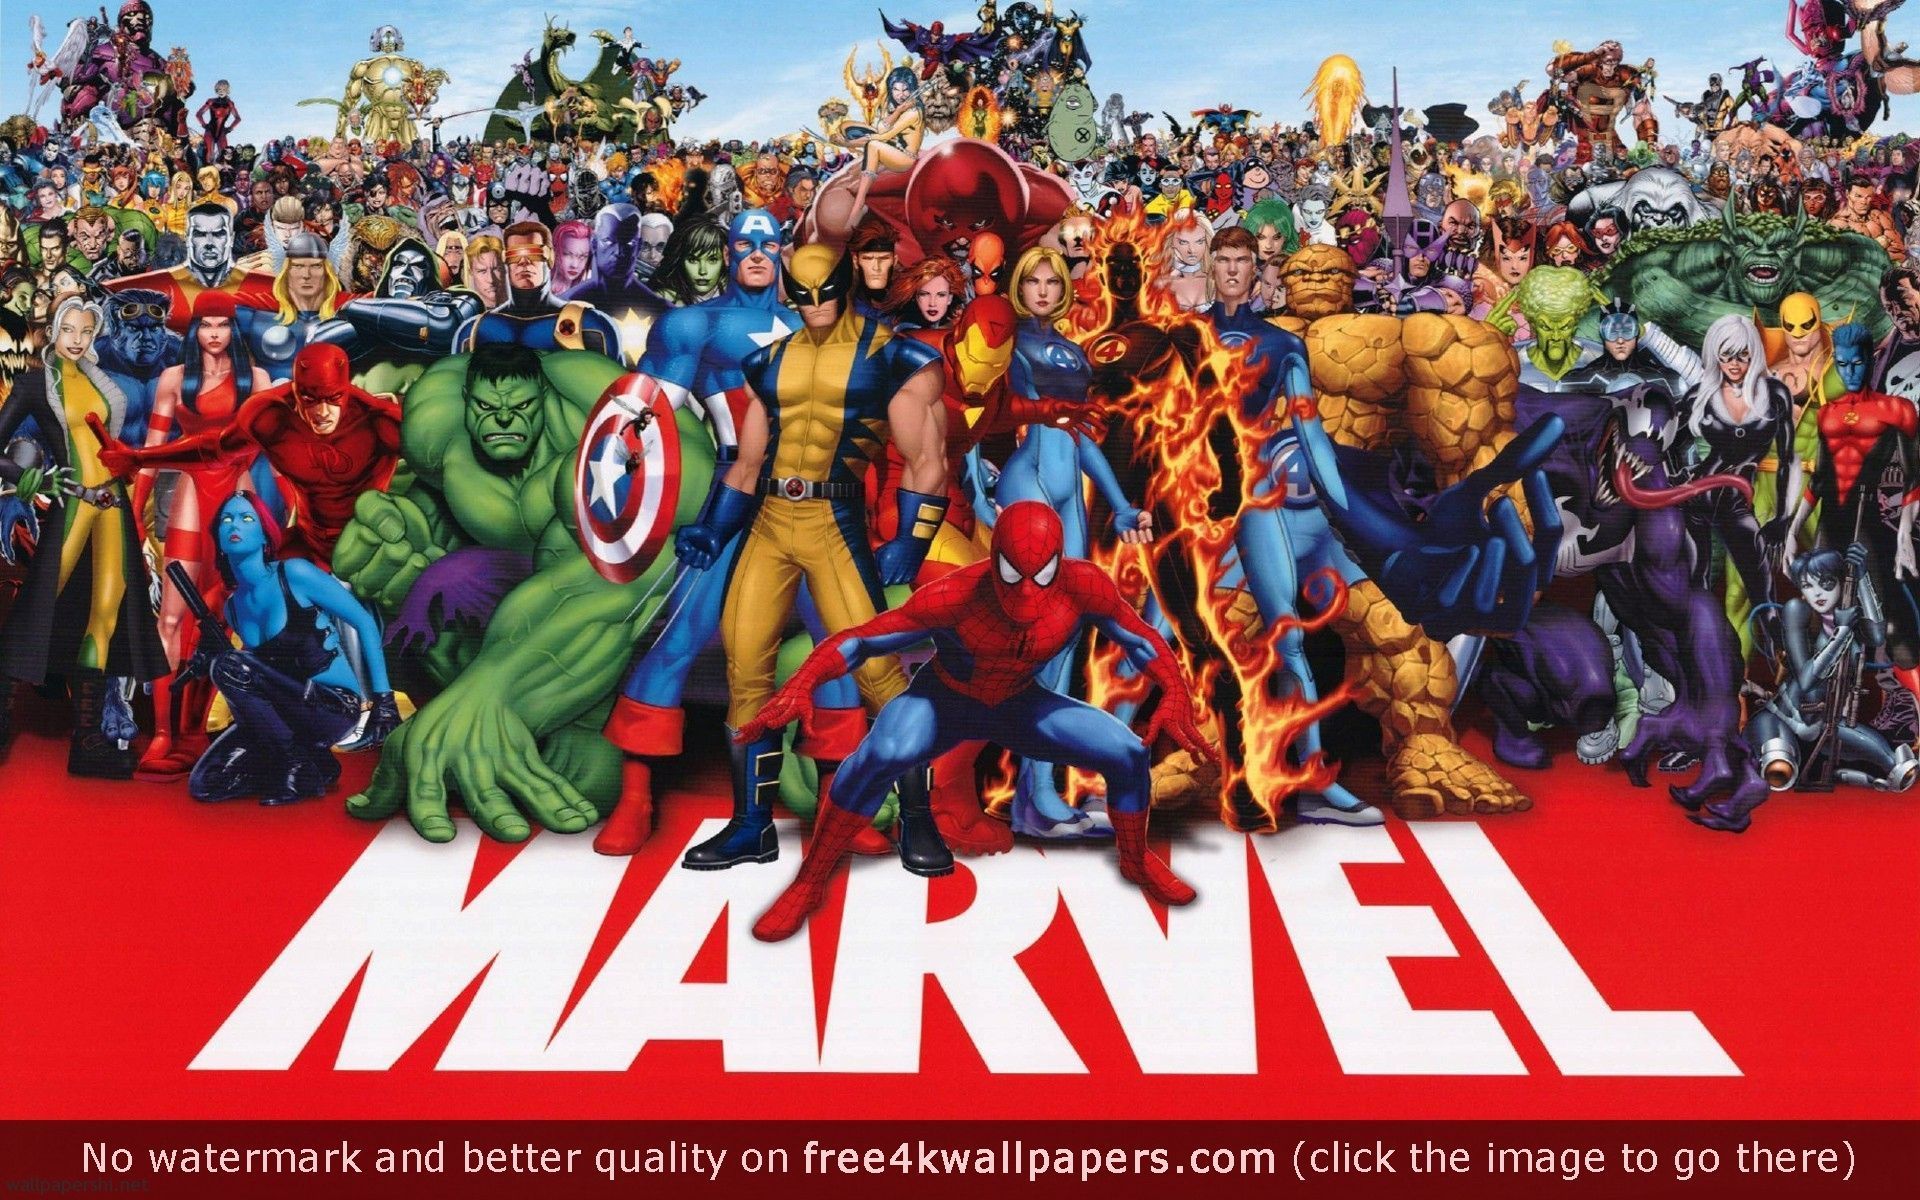 壁紙ヒーロー,ヒーロー,スーパーヒーロー,架空の人物,コミュニティ,アクションフィギュア